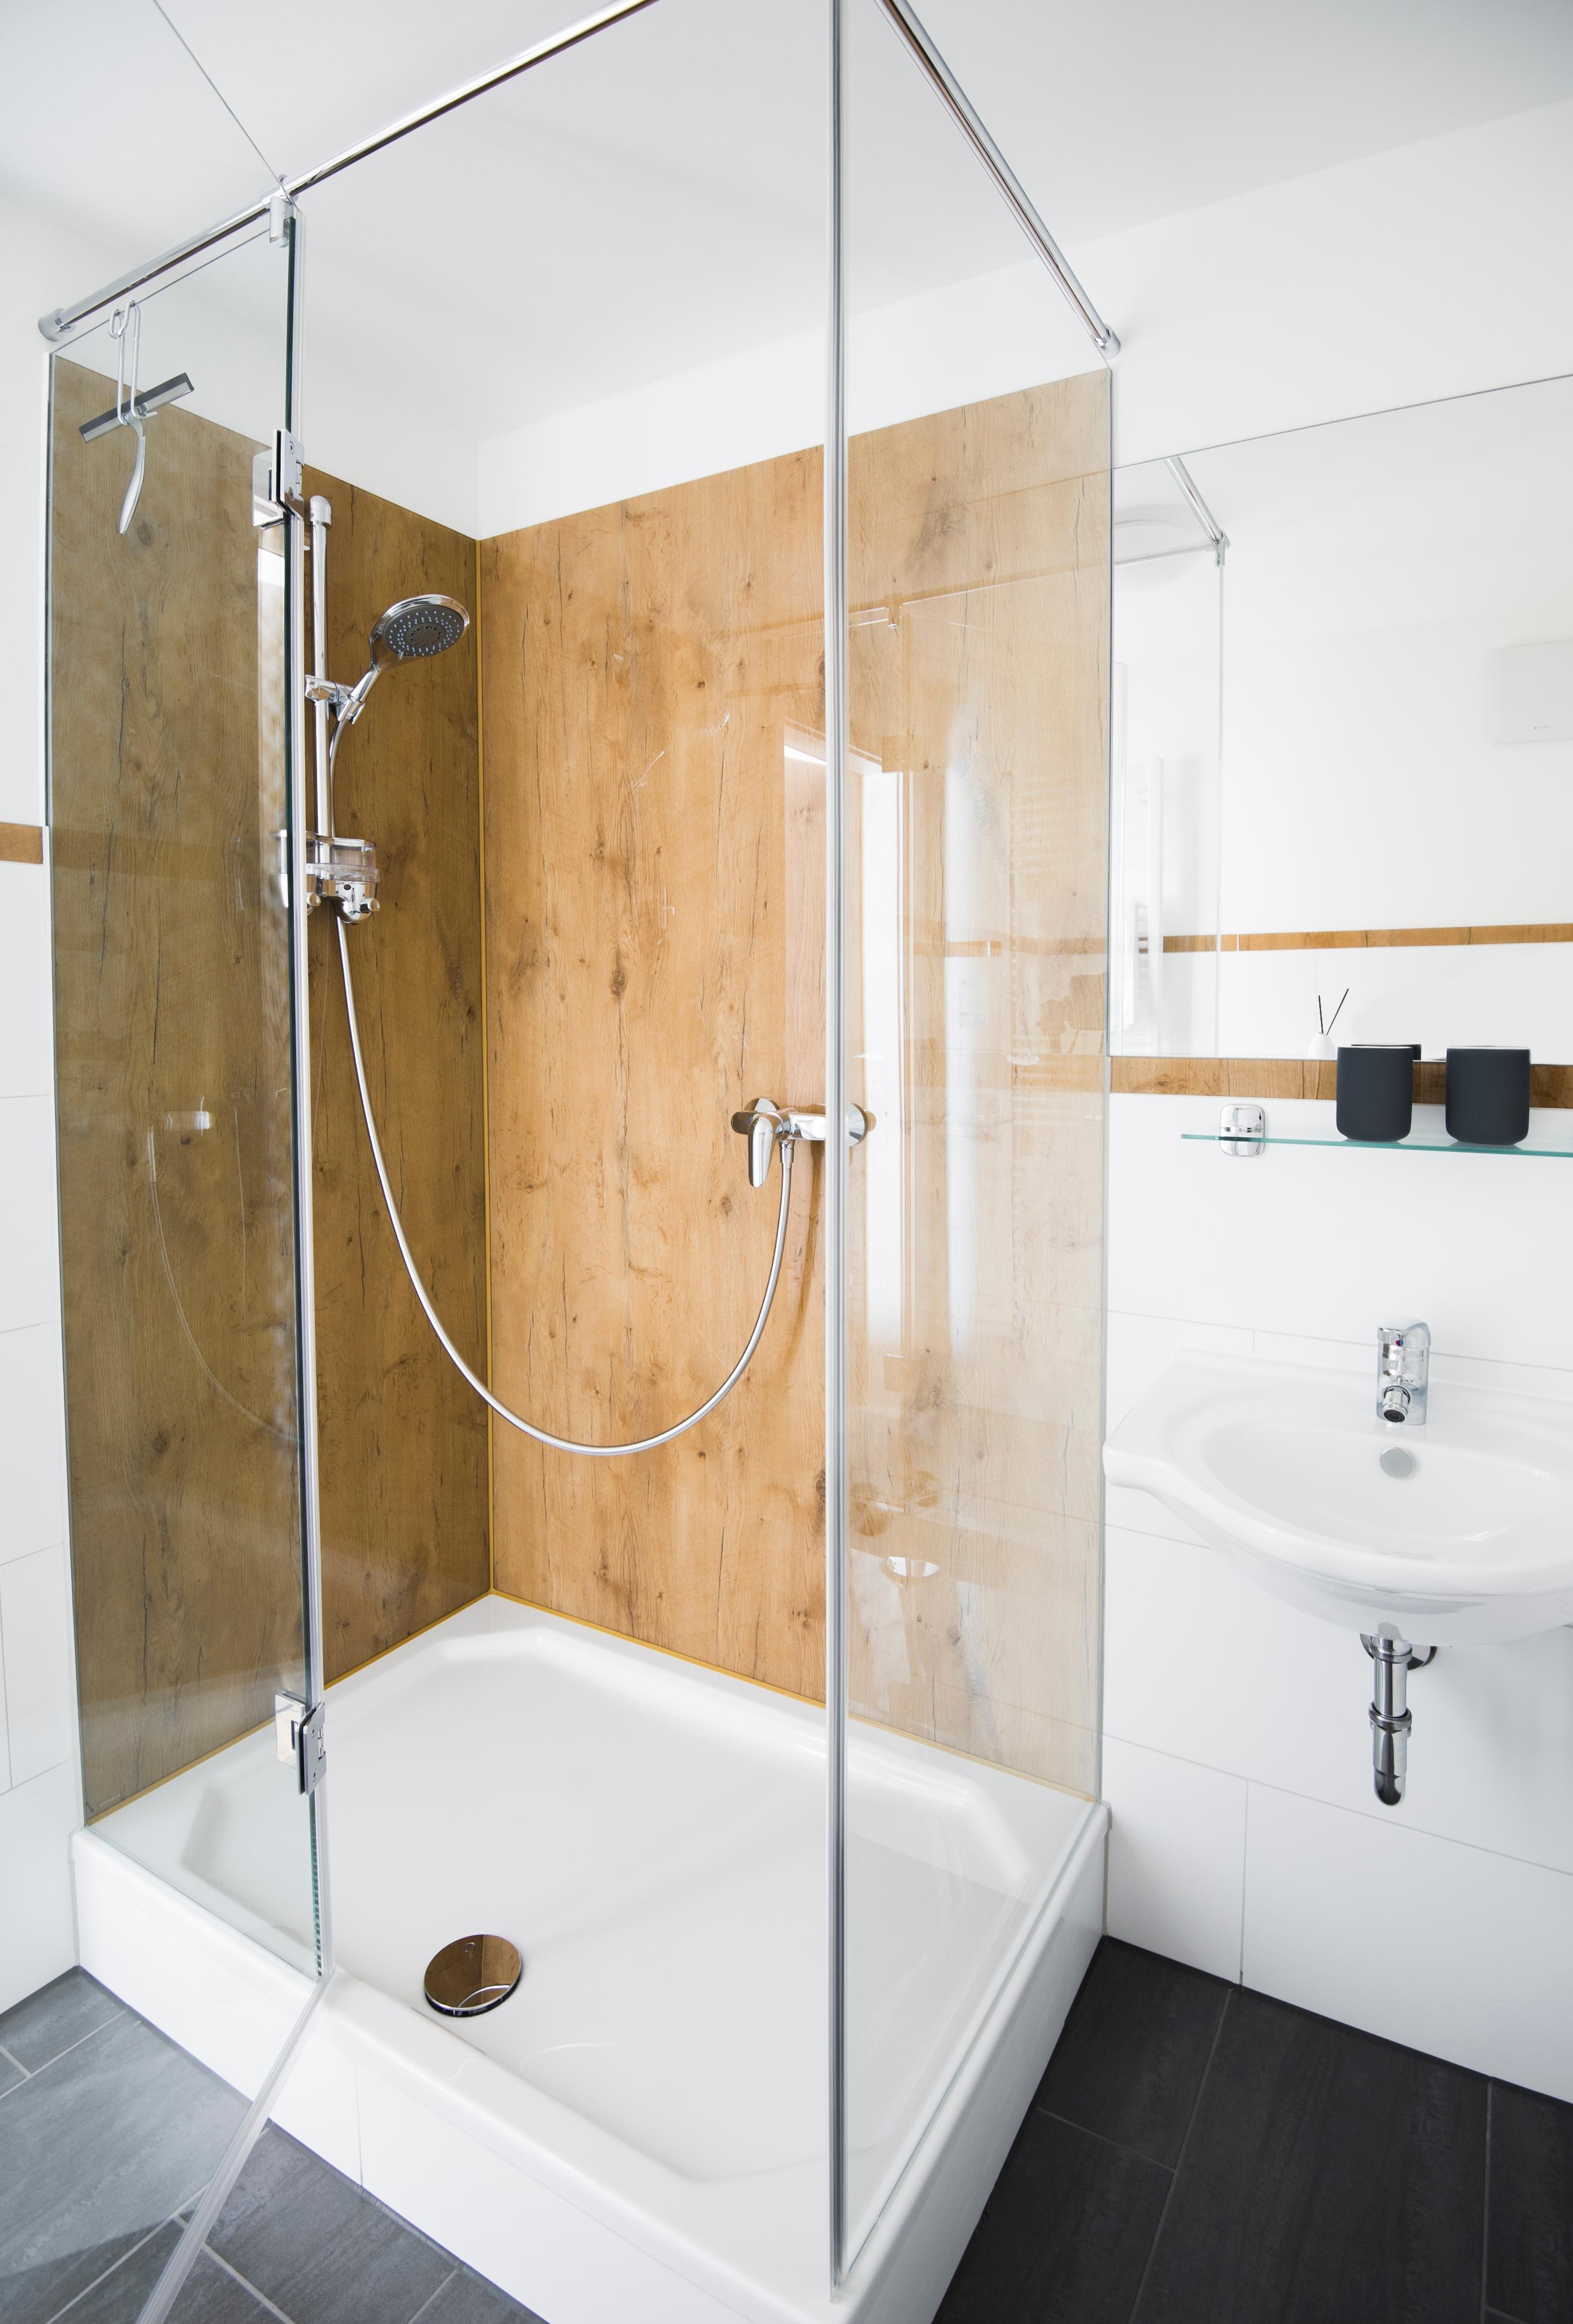 Glas Laminat Dusche mit Eichenoptik als Duschrückwand #badezimmer #laminat #duschrückwand ©Layerprint.de